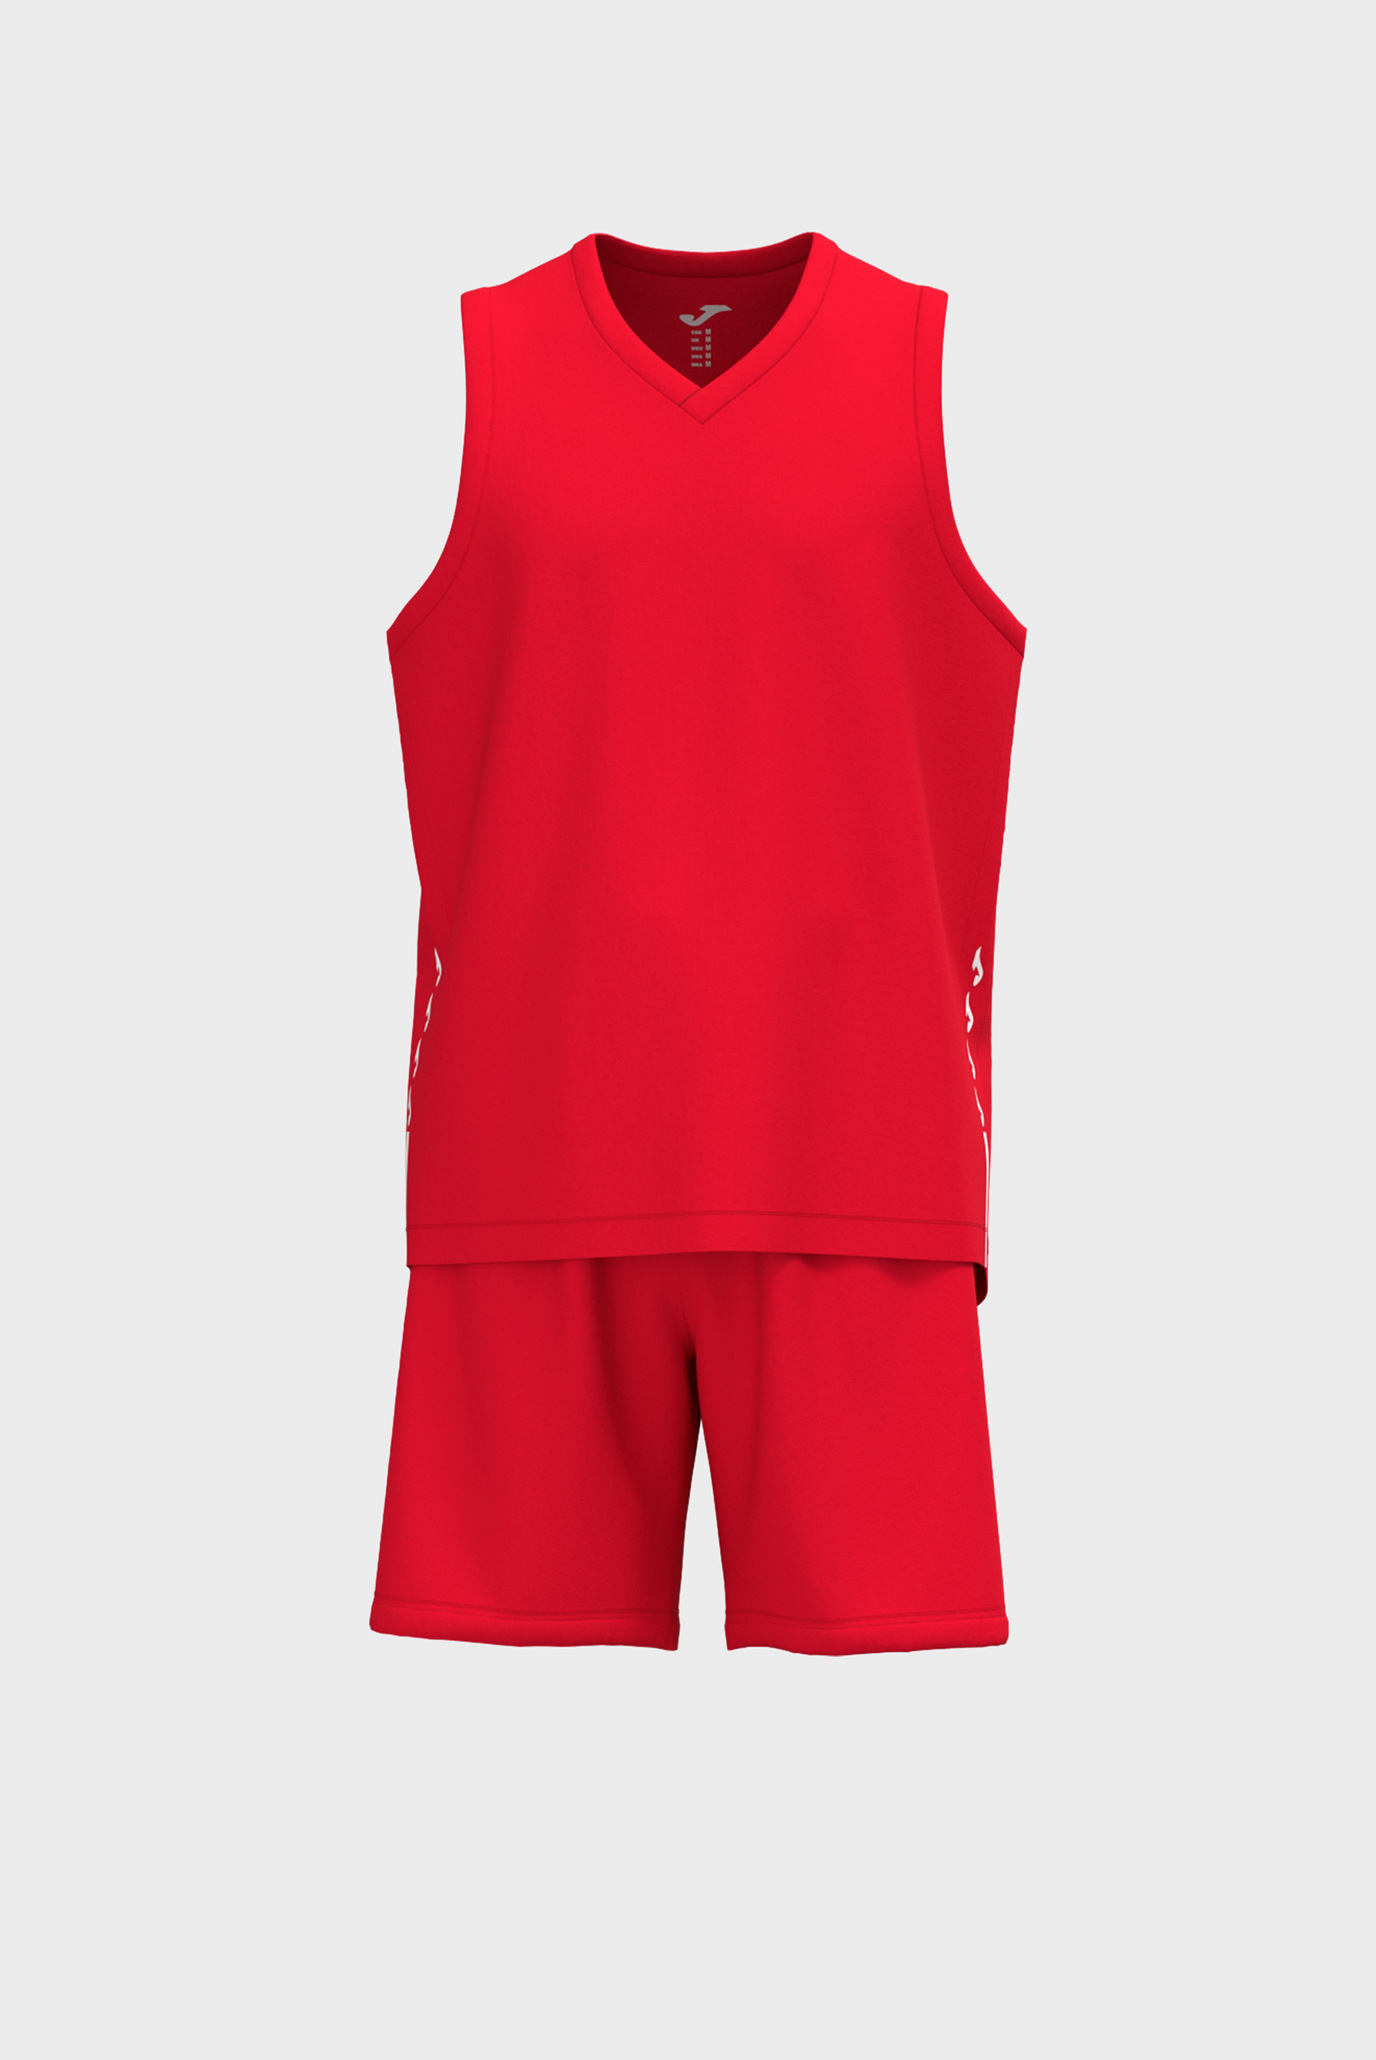 Детский красный спортивный костюм (майка, шорты) 1